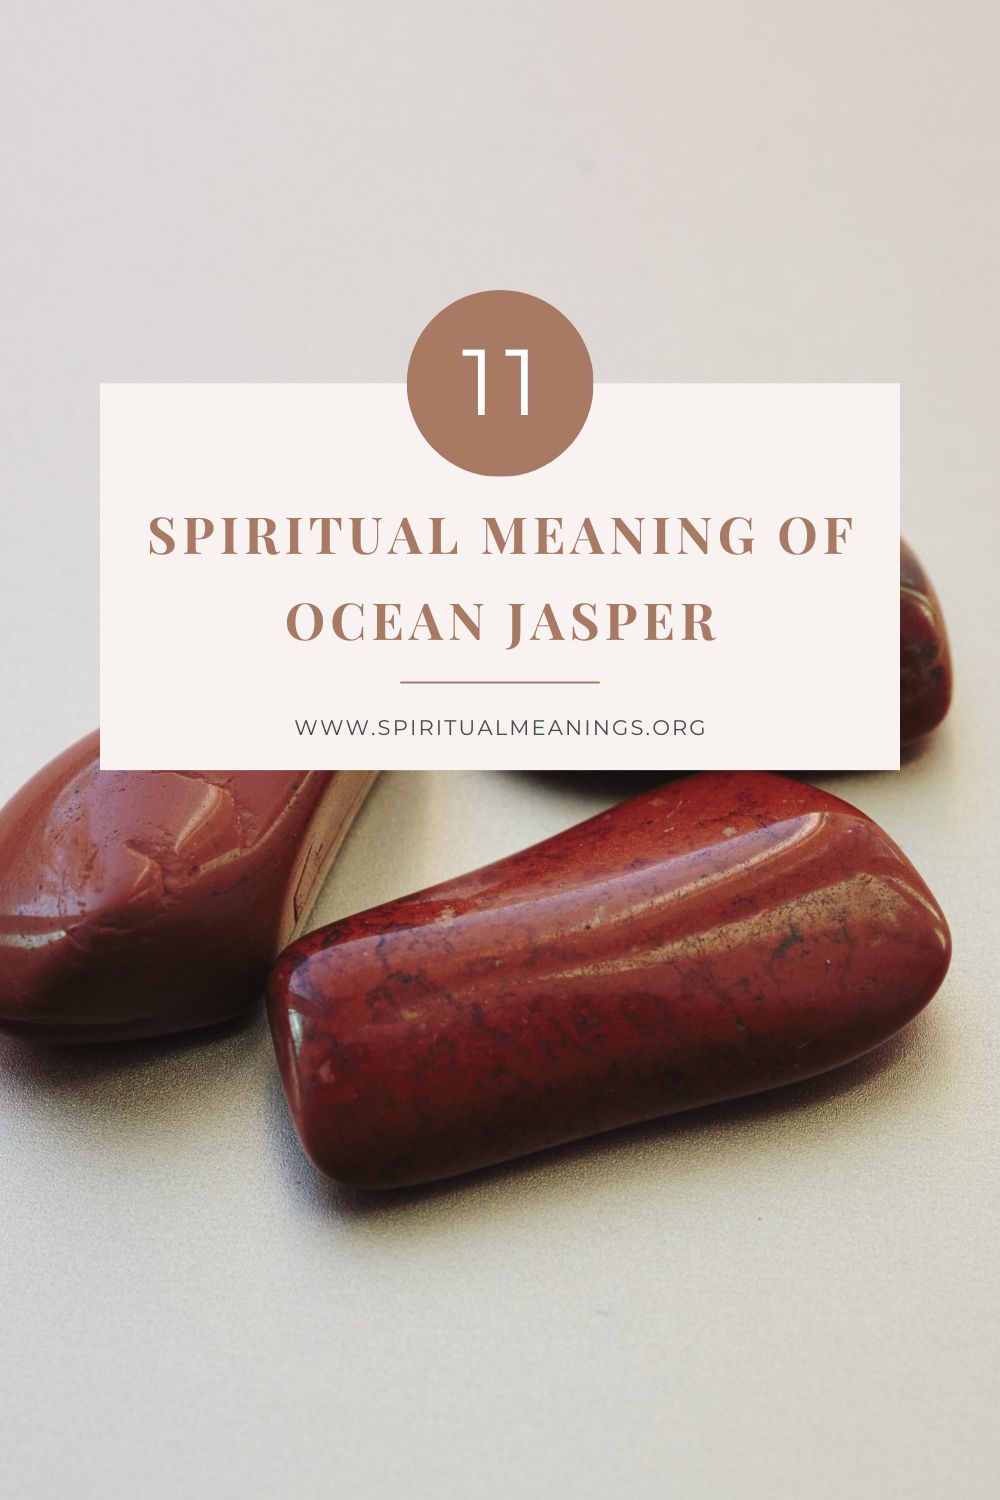 Ocean Jasper Spiritual Meanings pin 1